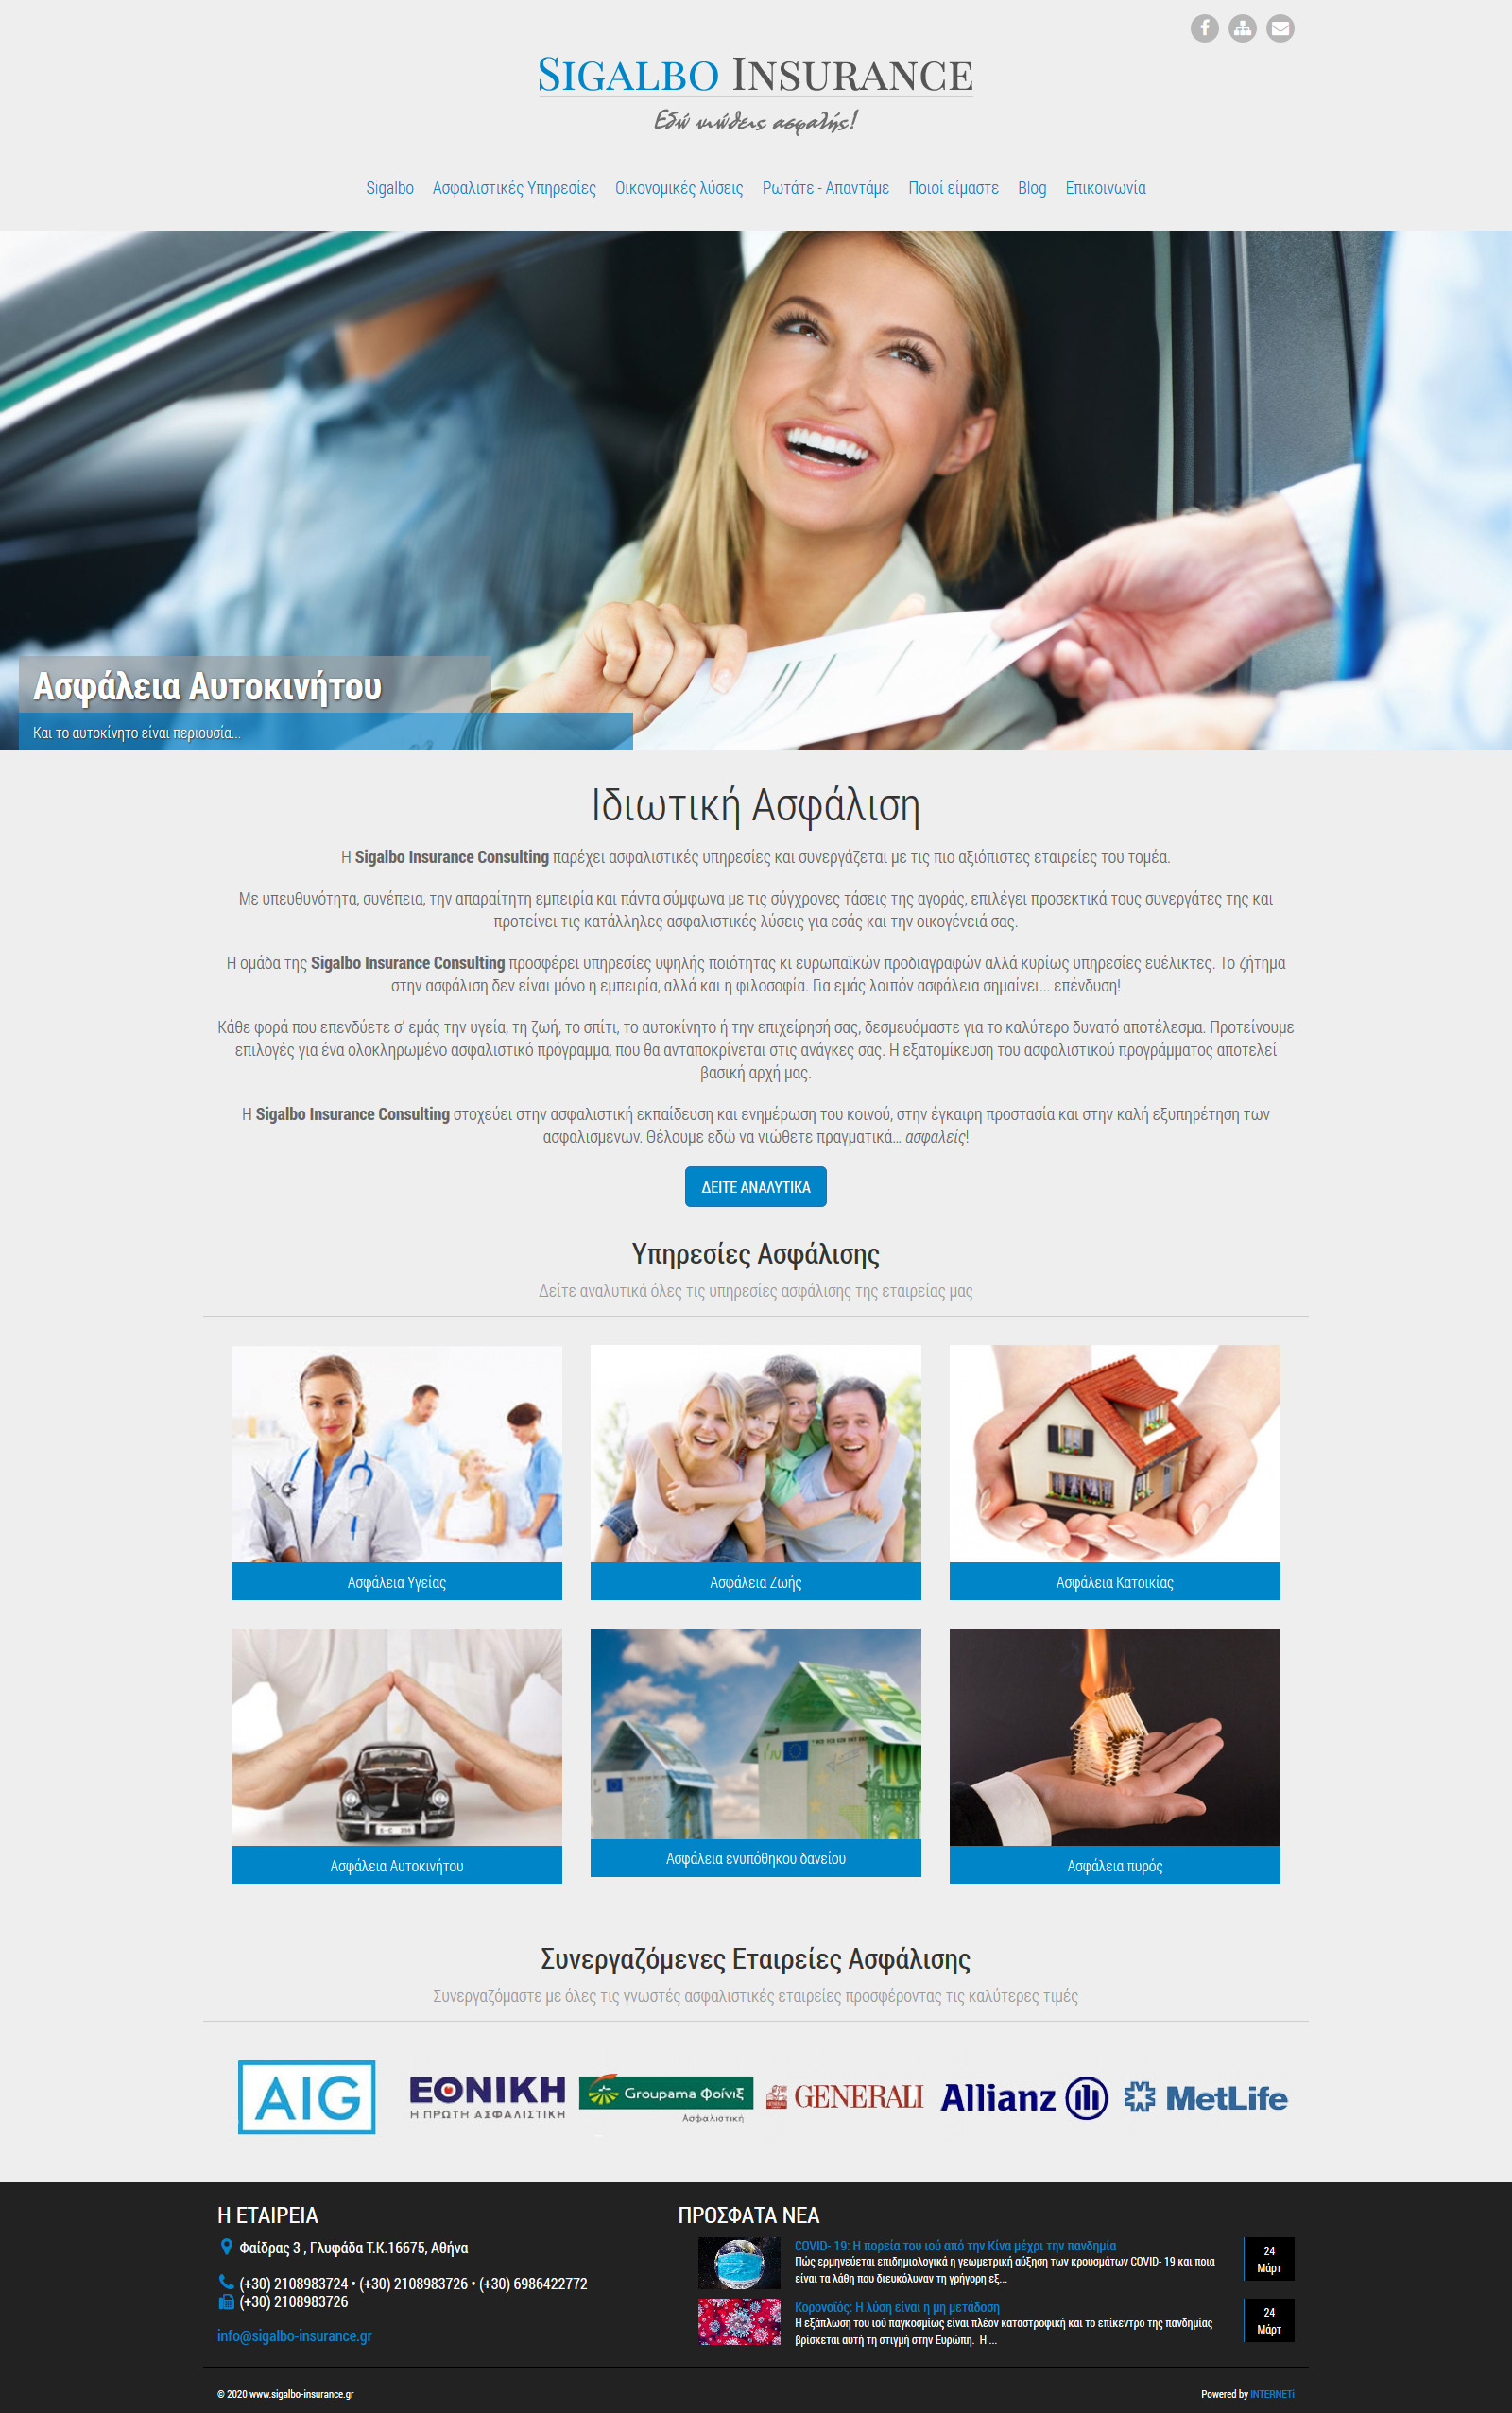 Κατασκευή ιστοσελίδων εταιρική παρουσίαση Ασφάλειες Sigalbo Insurance